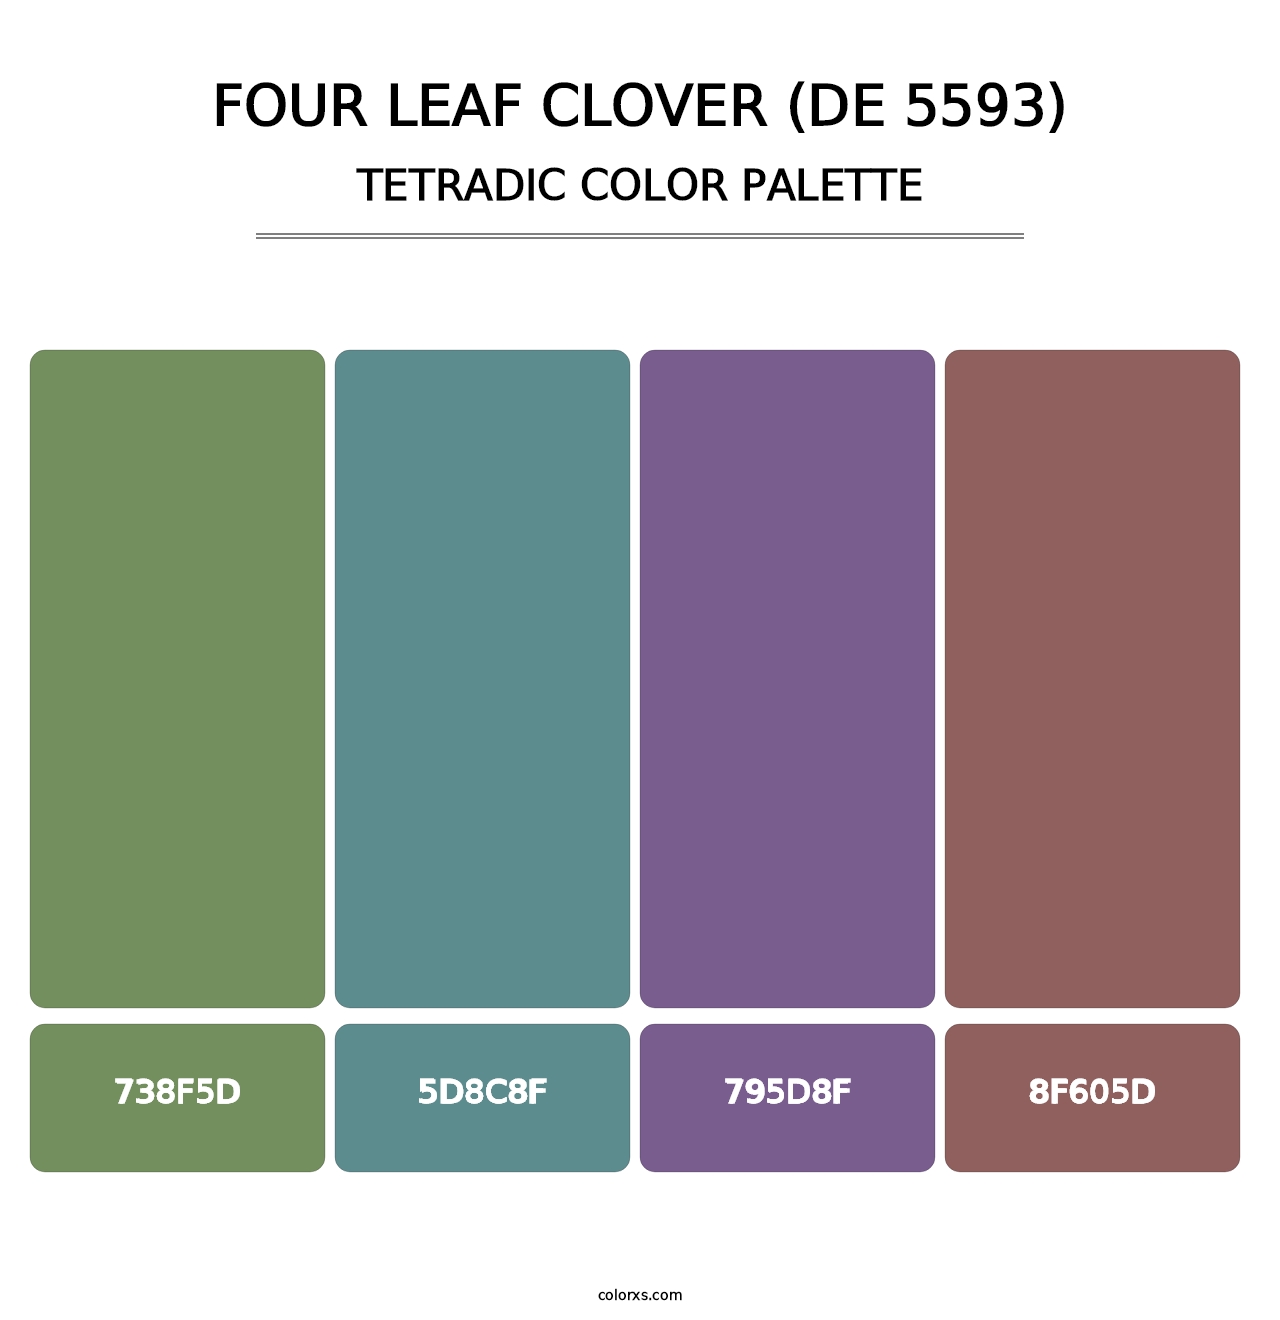 Four Leaf Clover (DE 5593) - Tetradic Color Palette